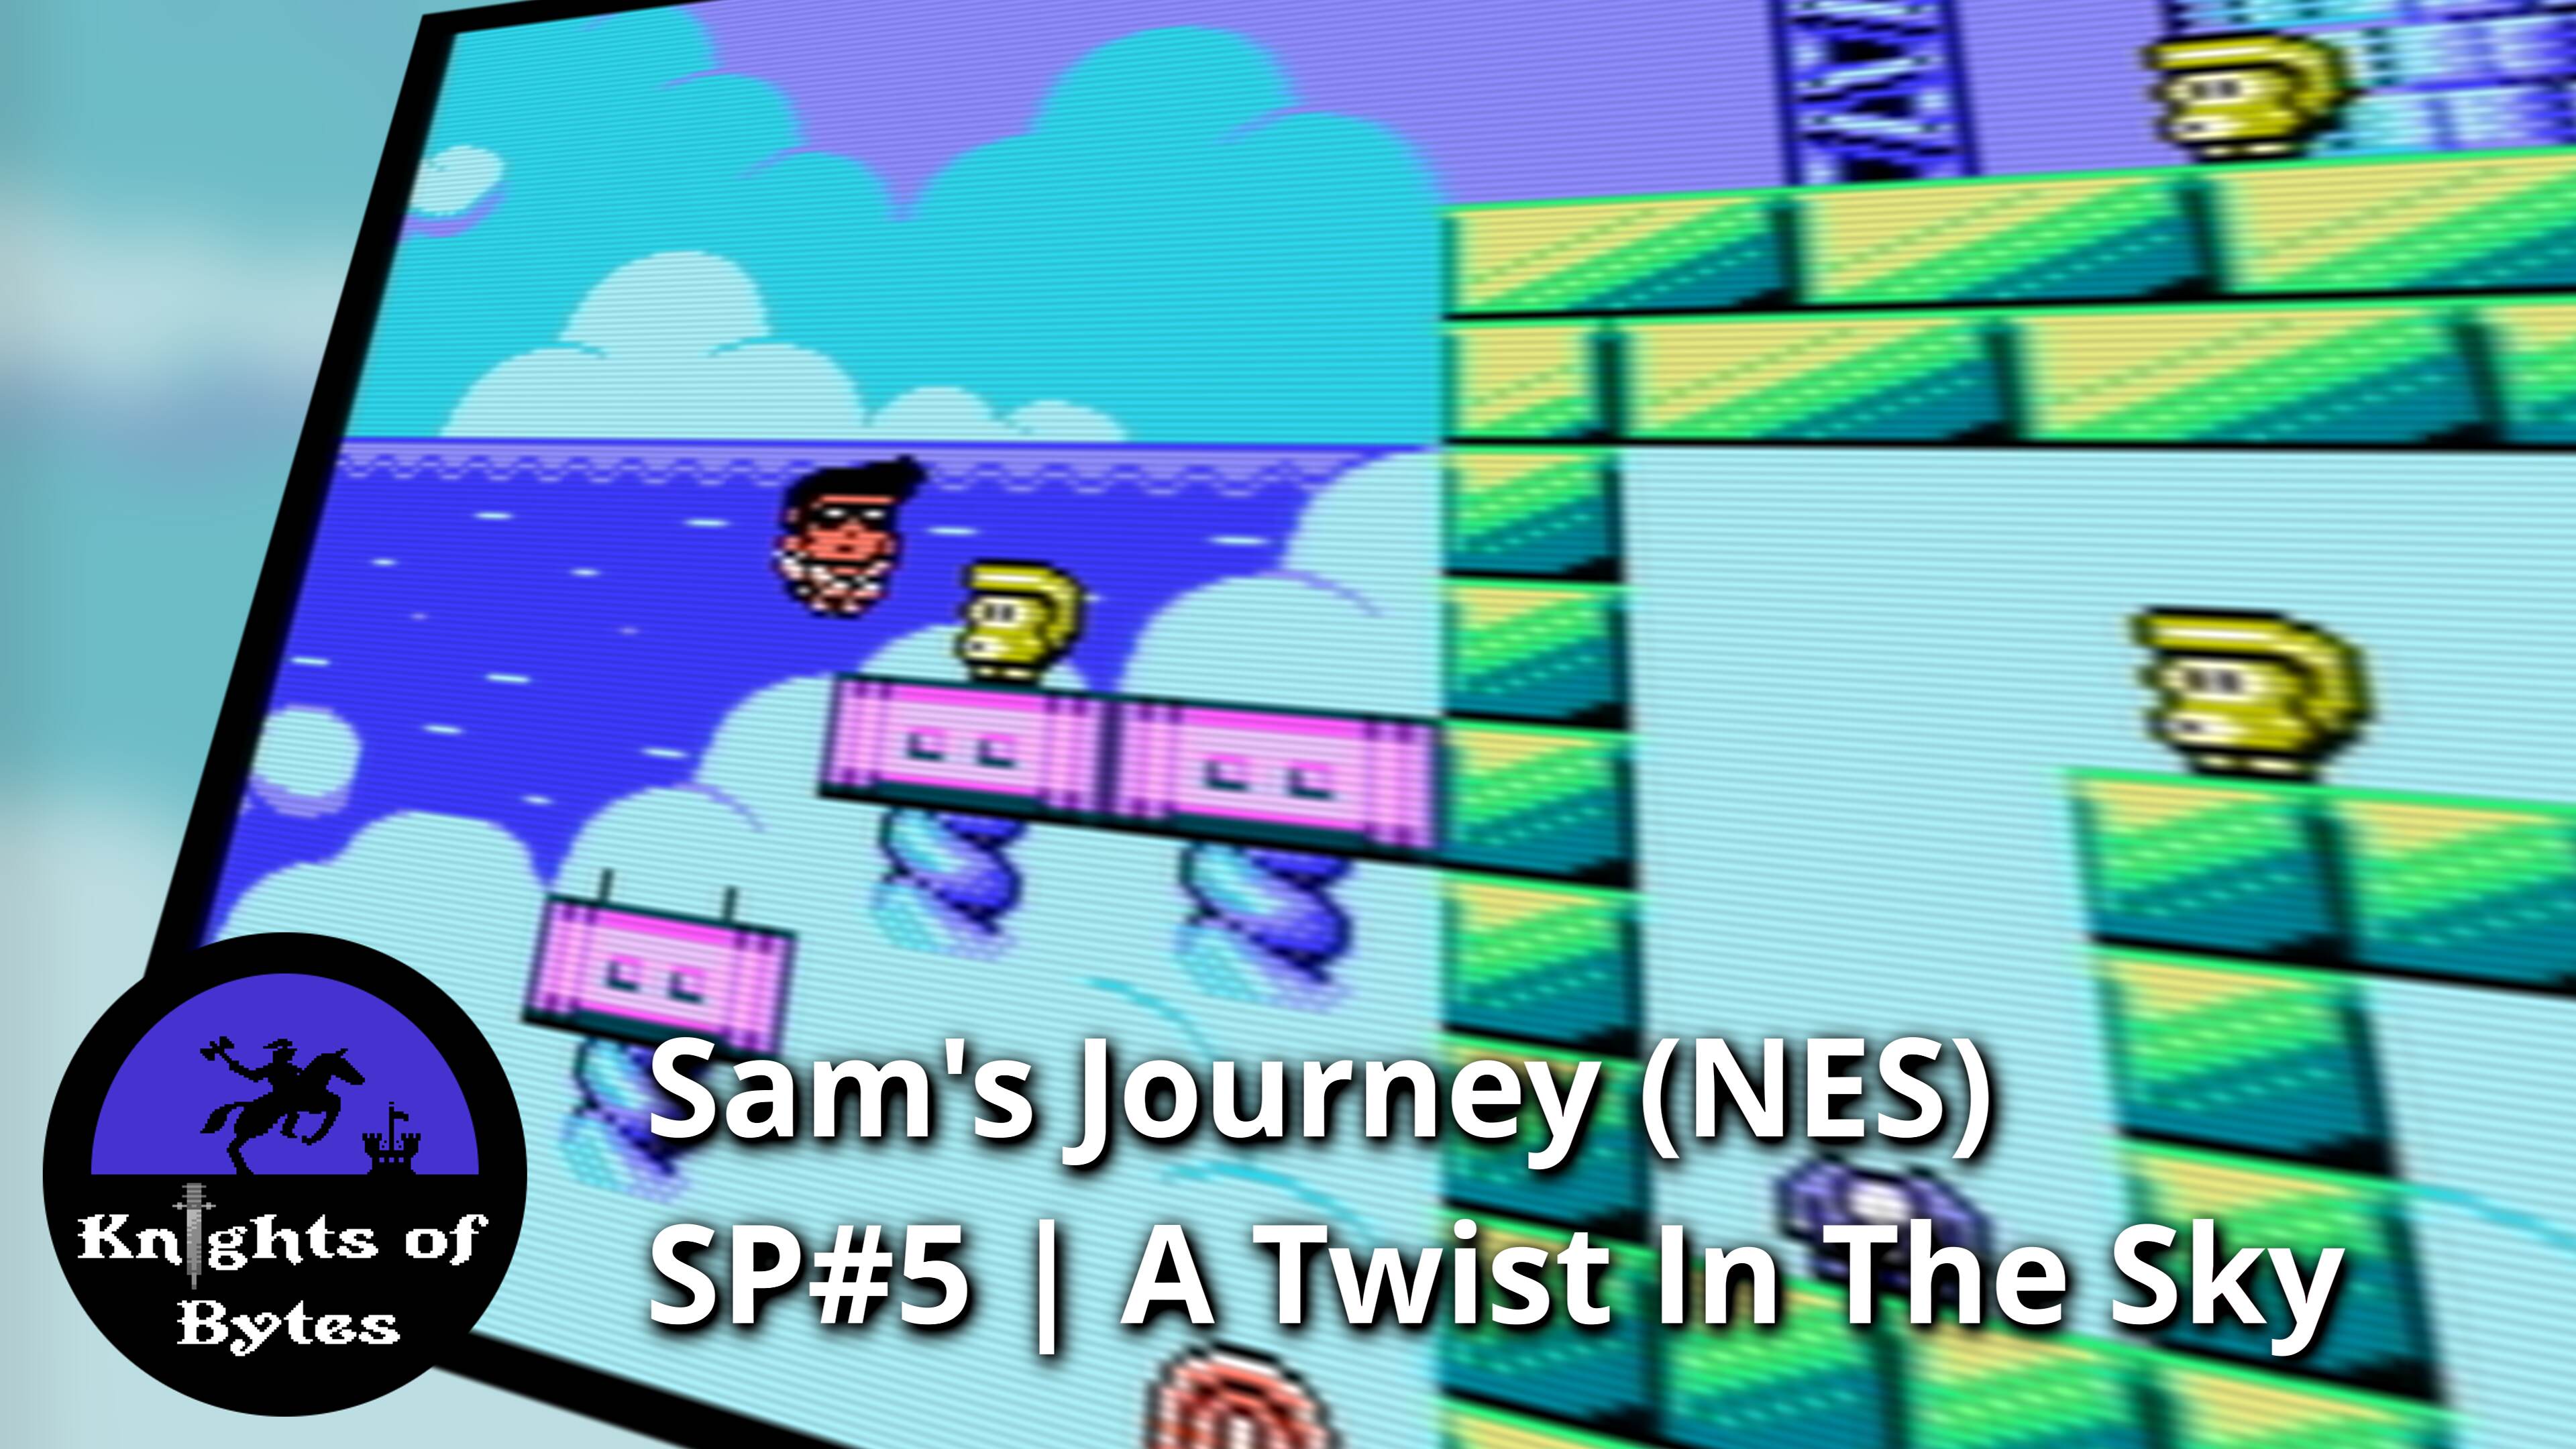 Sam's Journey NES Sneak Peek 5 Poster